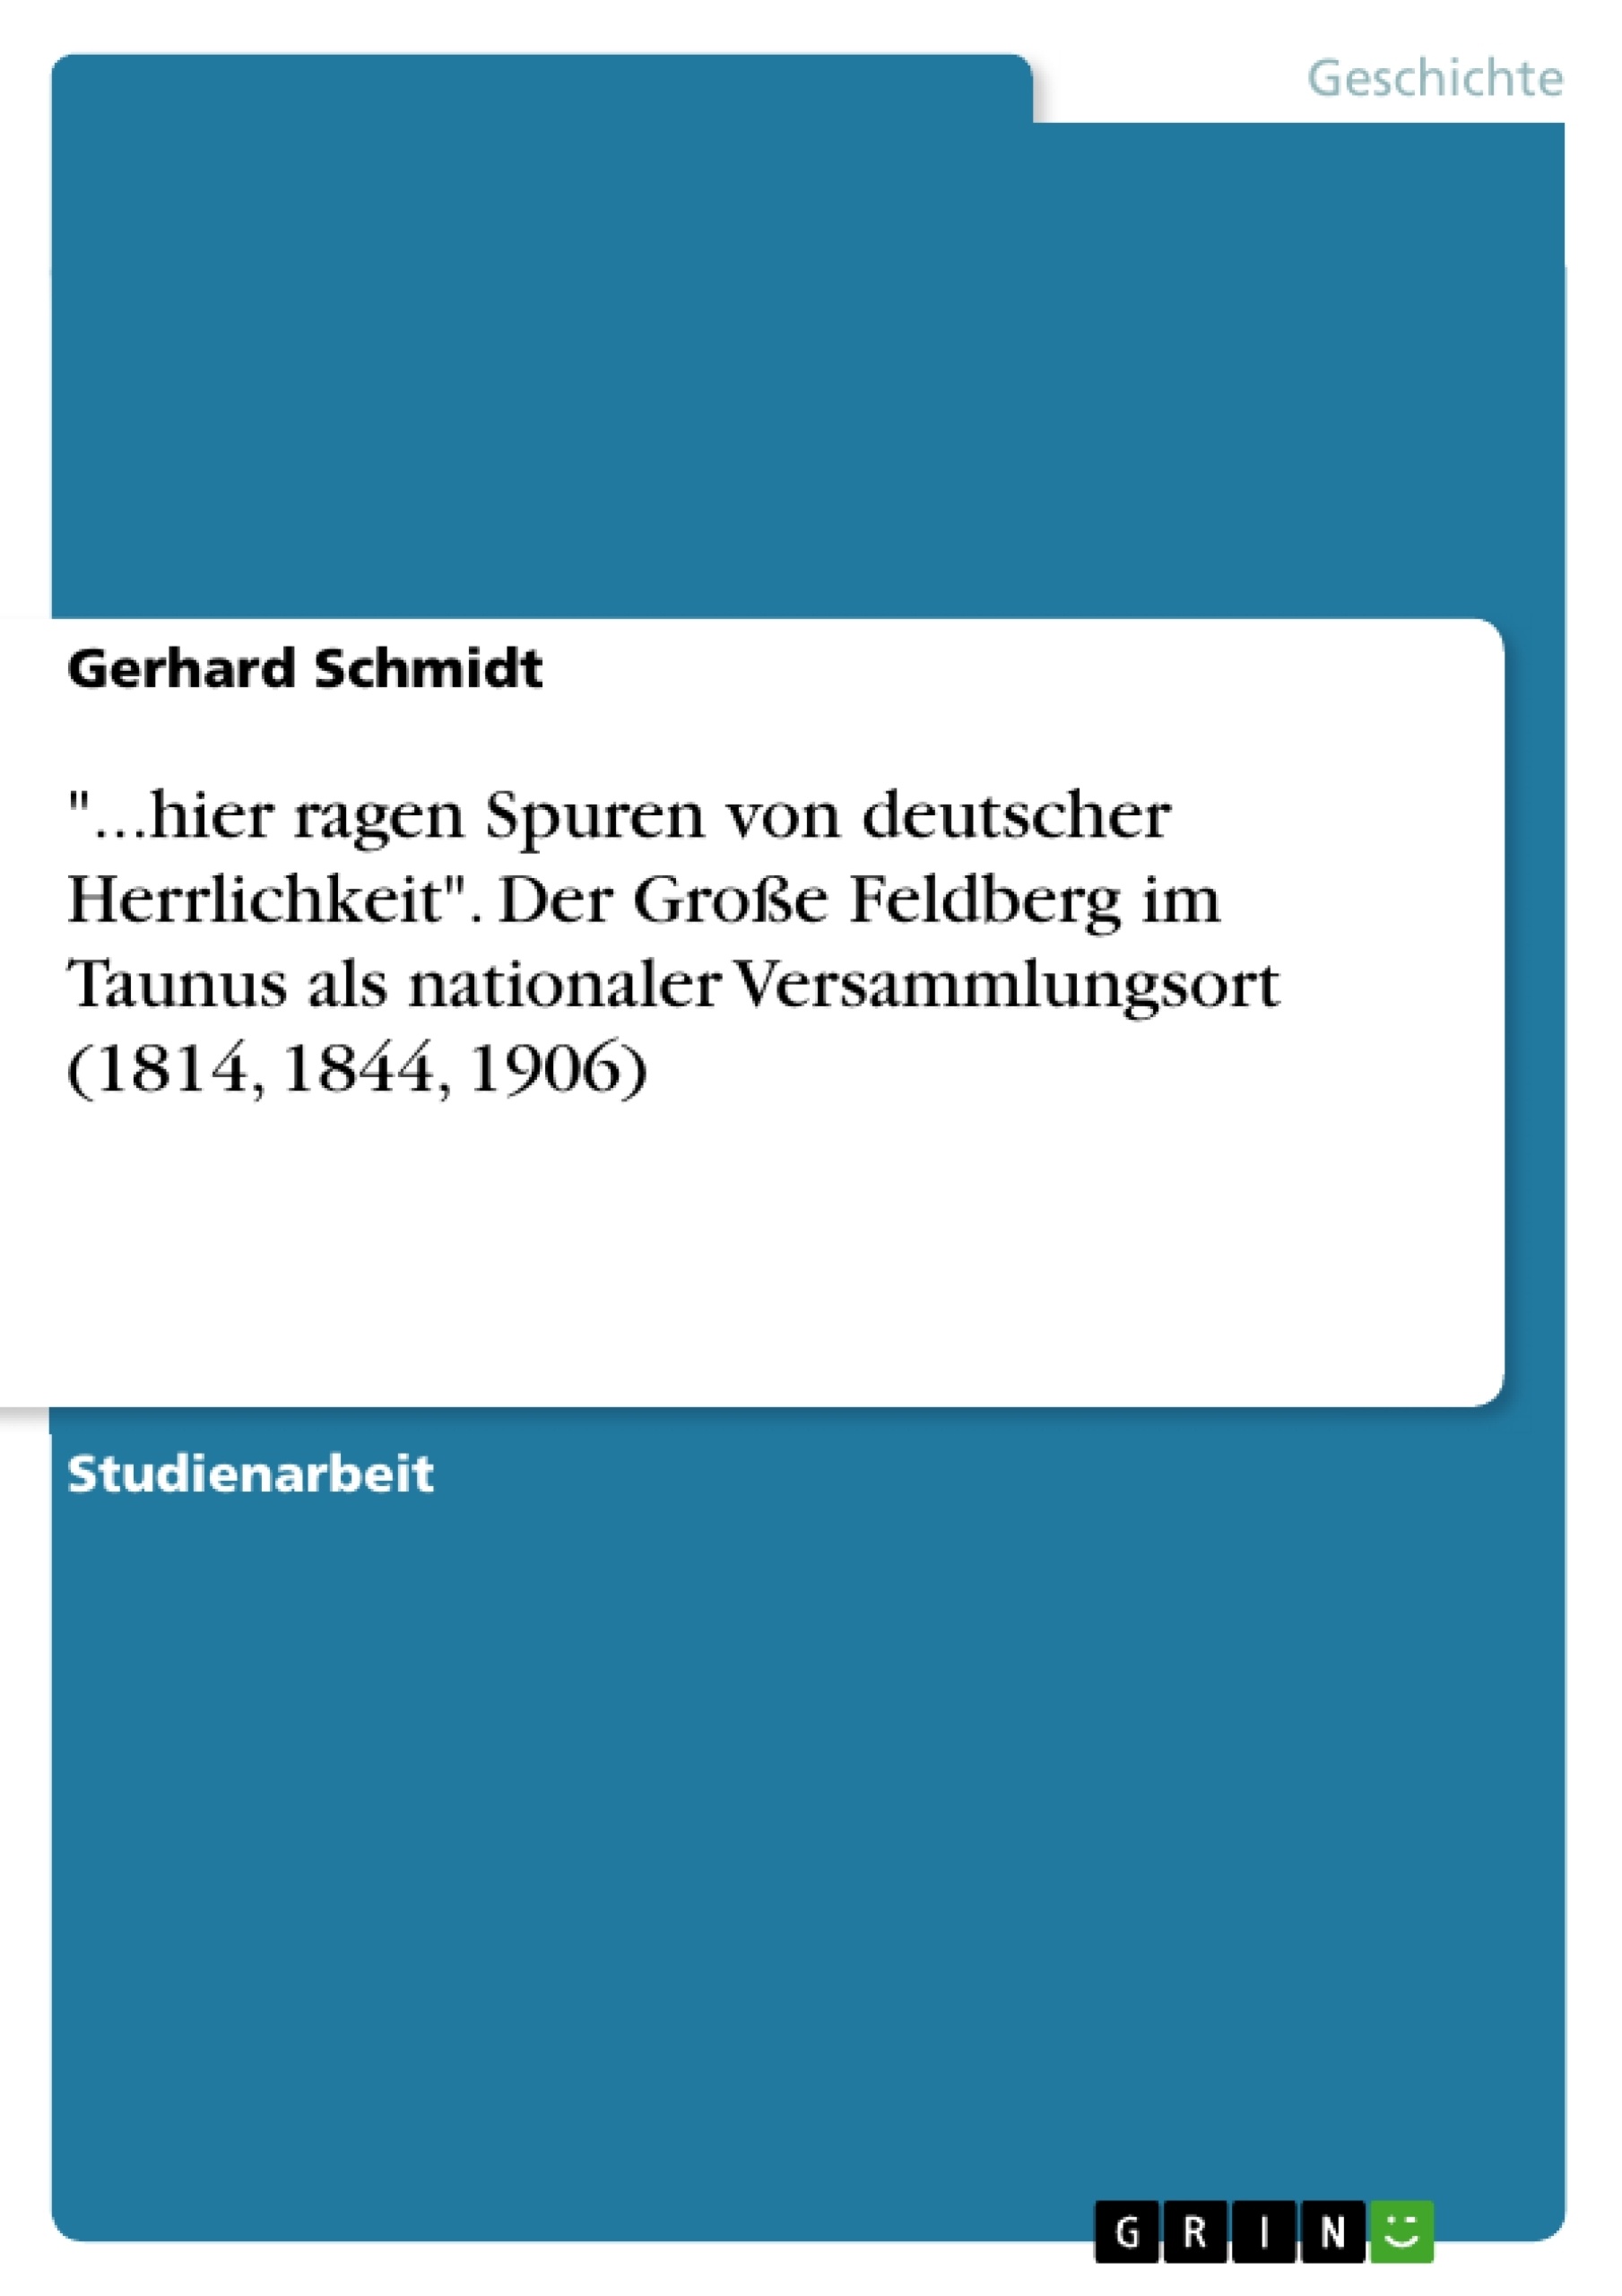 Título: "...hier ragen Spuren von deutscher Herrlichkeit". Der Große Feldberg im Taunus als nationaler Versammlungsort (1814, 1844, 1906)